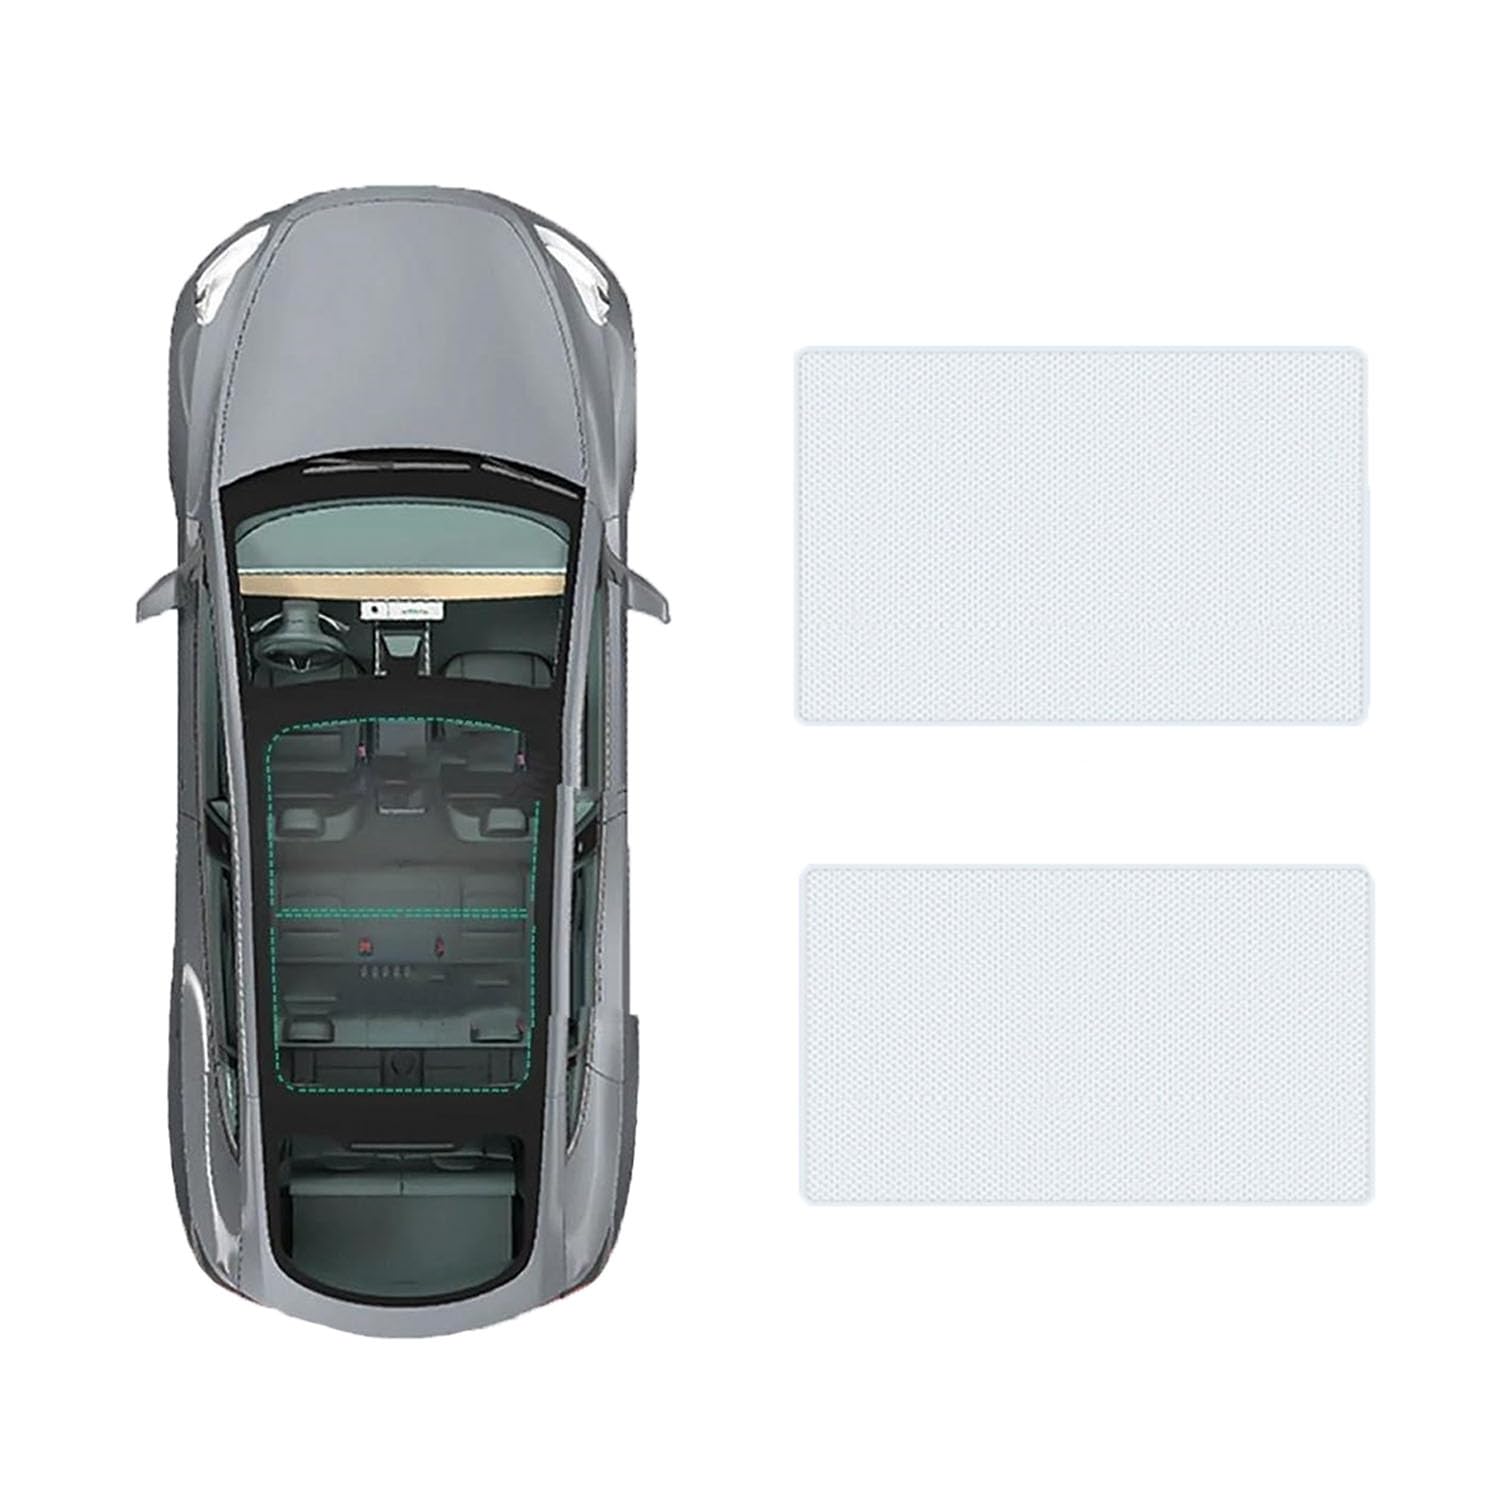 Für VW Passat 2019- Auto-Schiebedach-Beschattung,Dach Wärme Isolierung Anti-UV Visier Auto Zubehör,A-Gray white regular Style von ANRAM